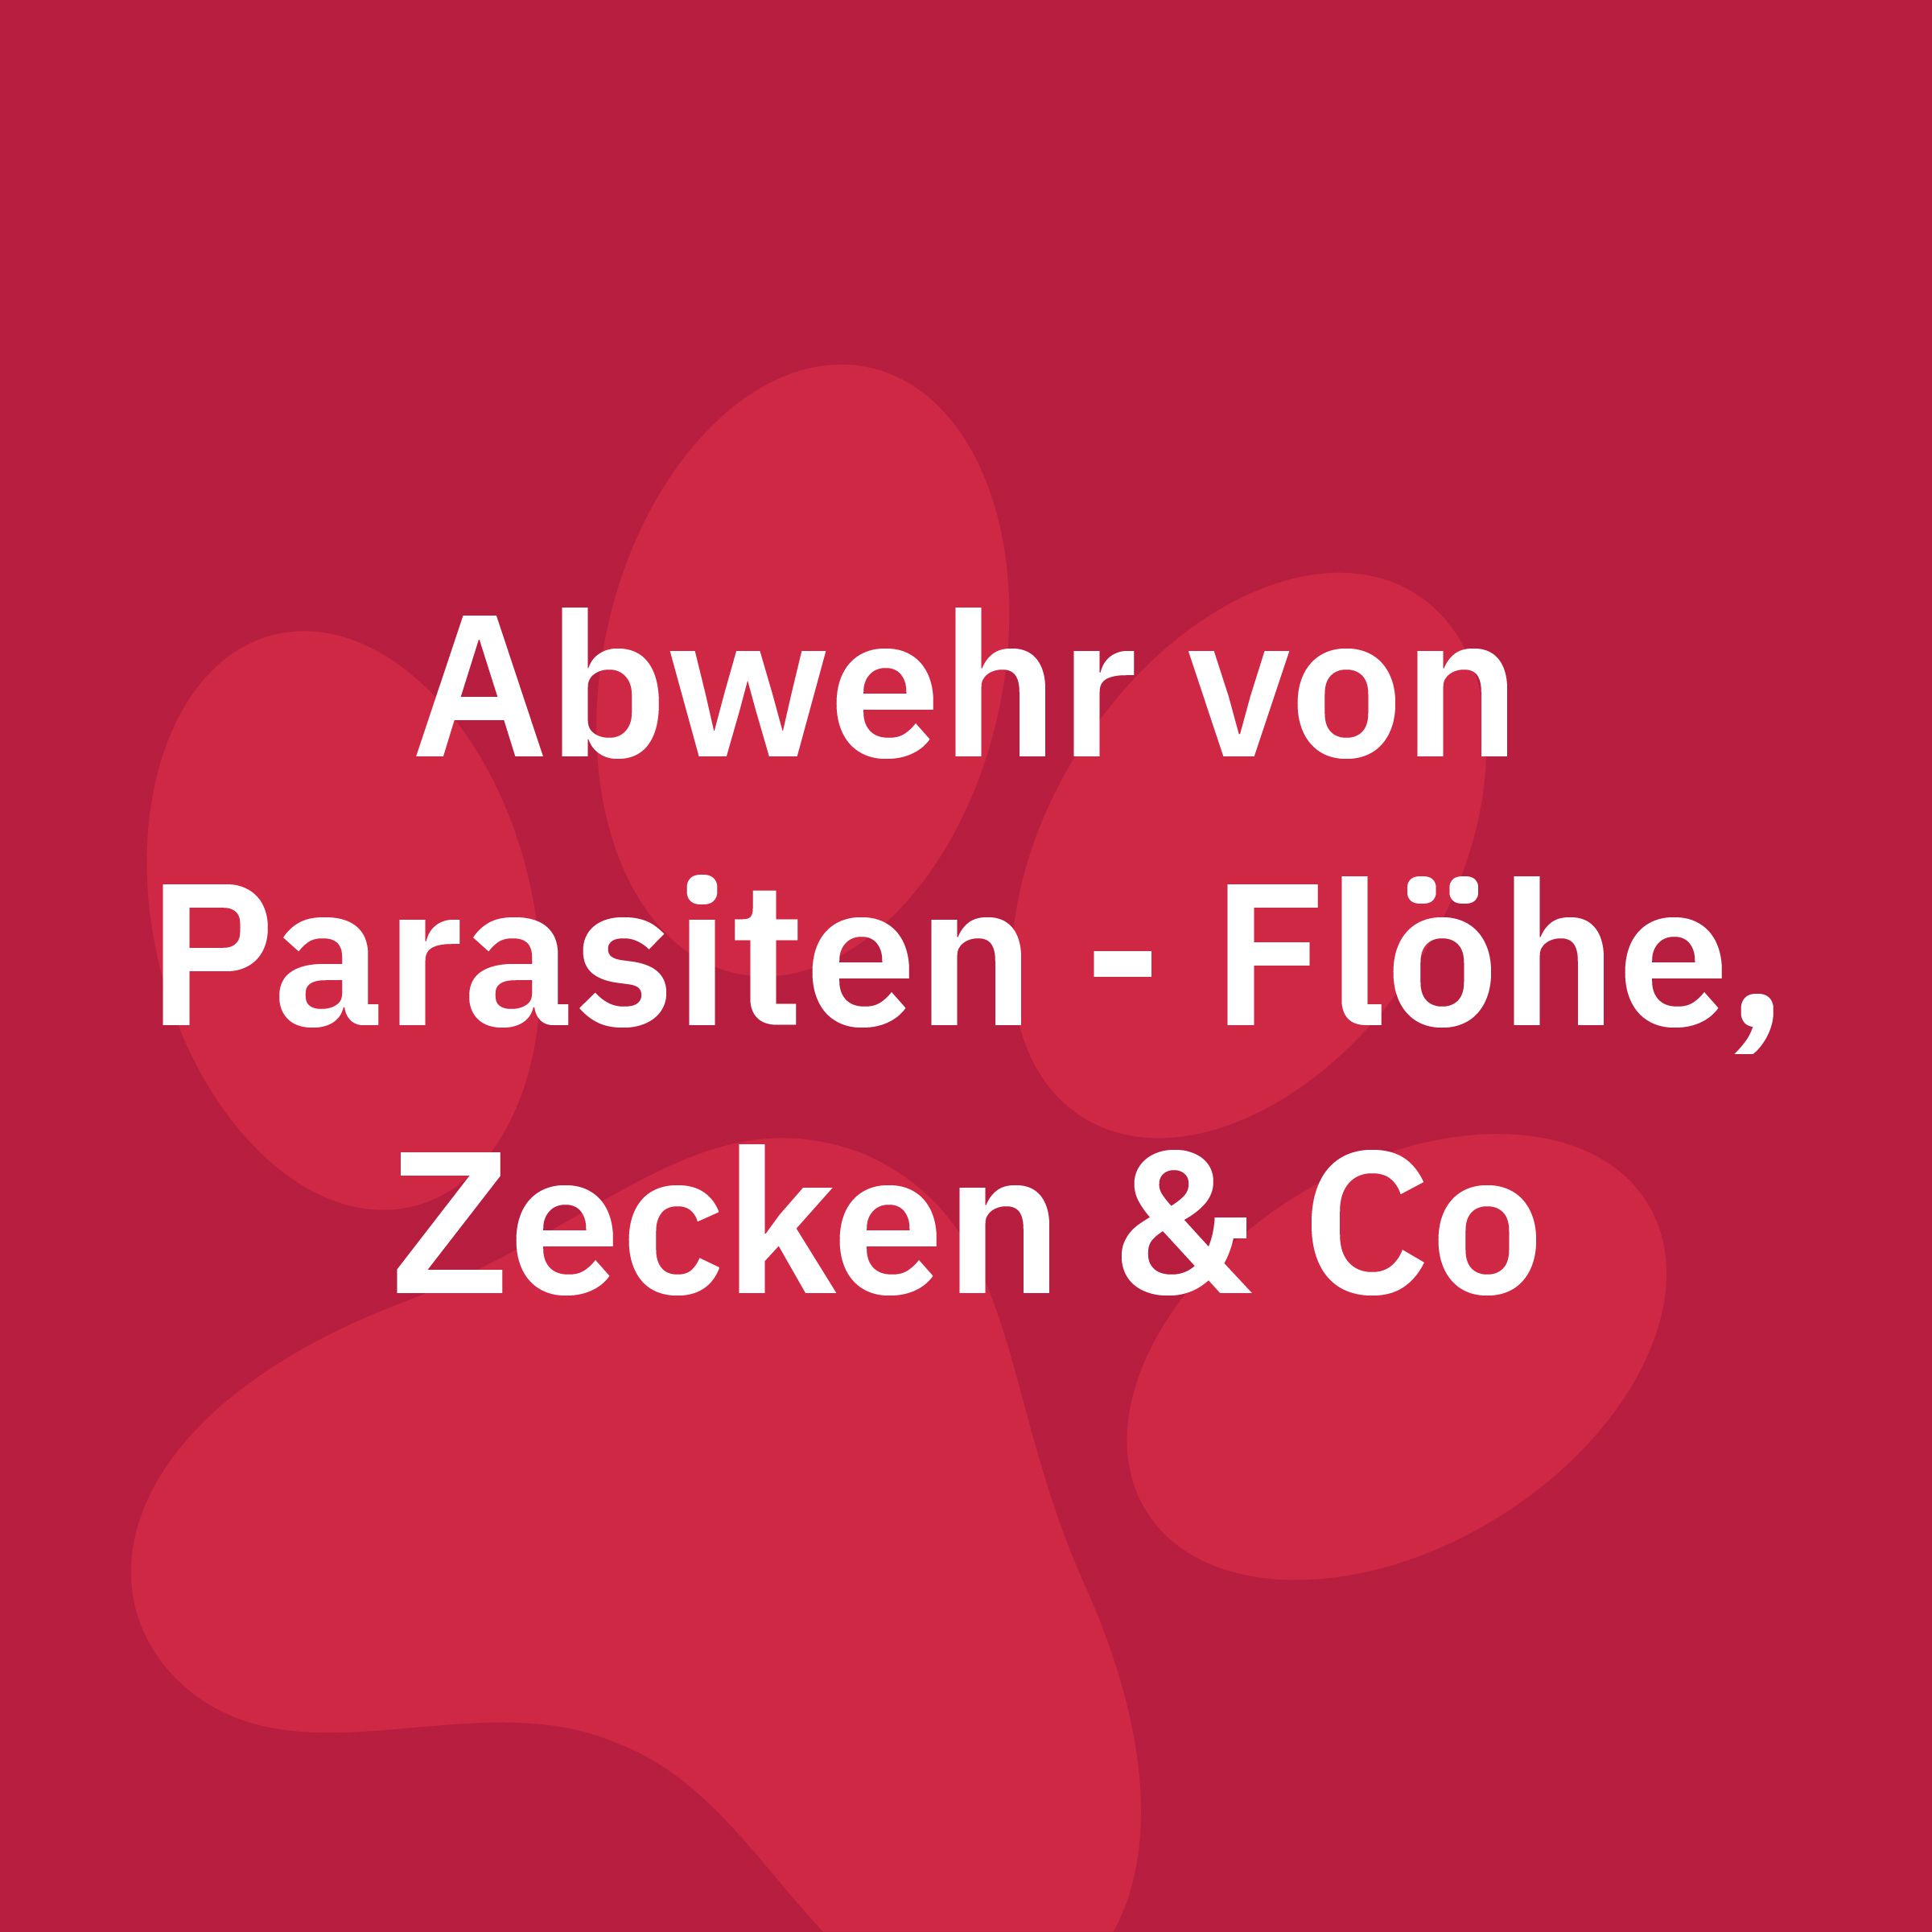 Abwehr von Parasiten - Flöhe, Zecken & Co